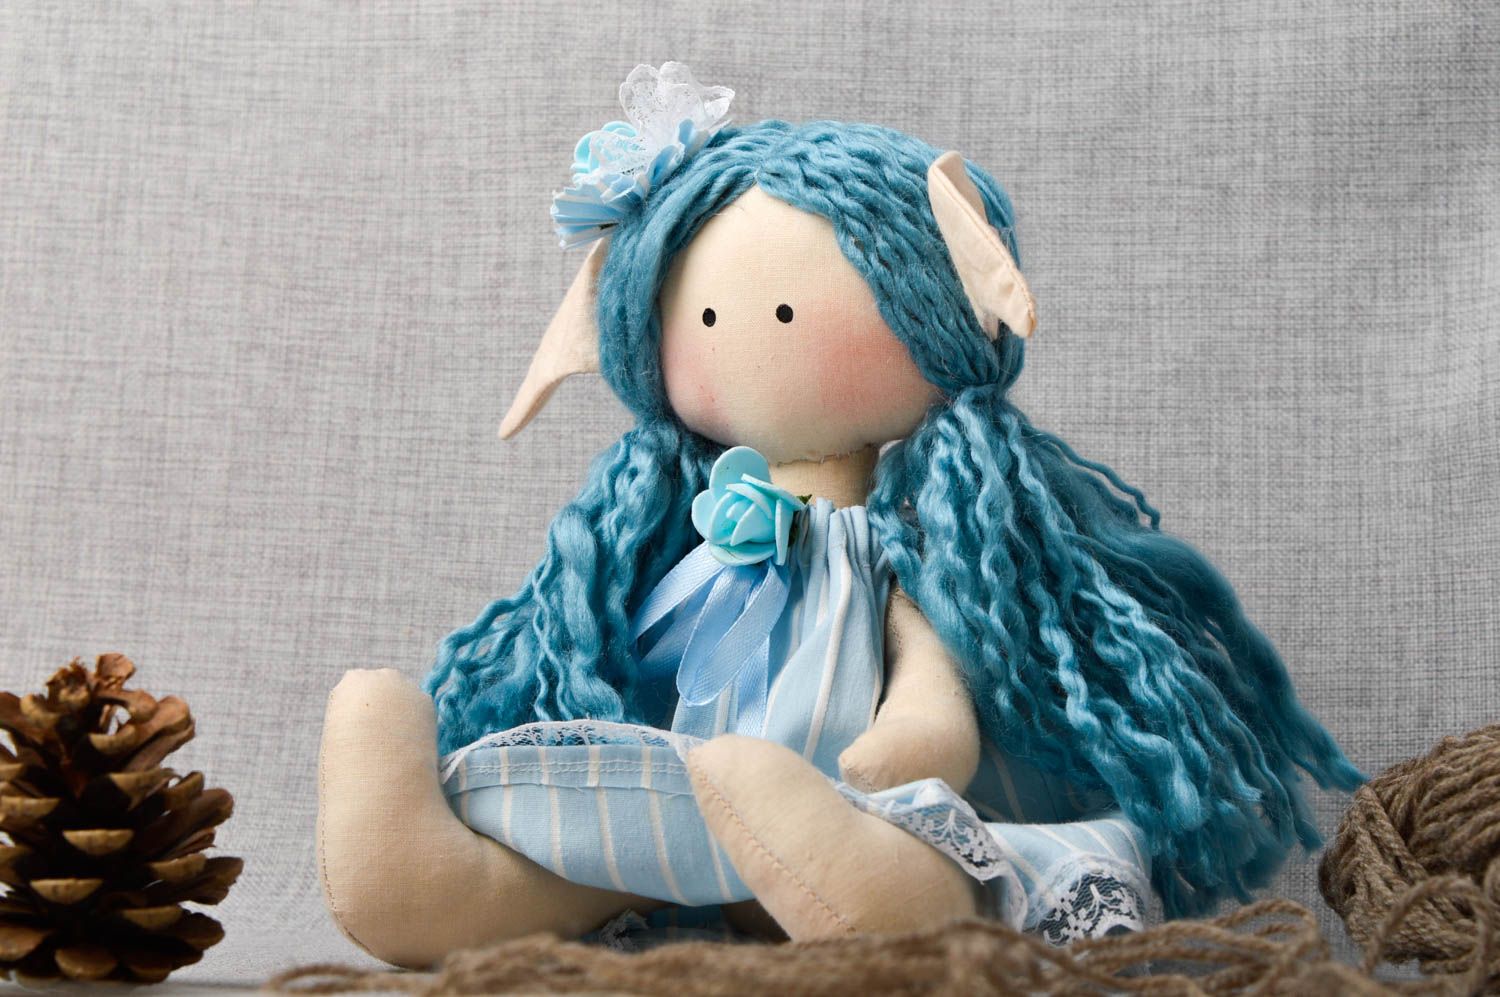 Кукла ручной работы кукла из ткани голубая мягкая кукла авторского дизайна фото 1